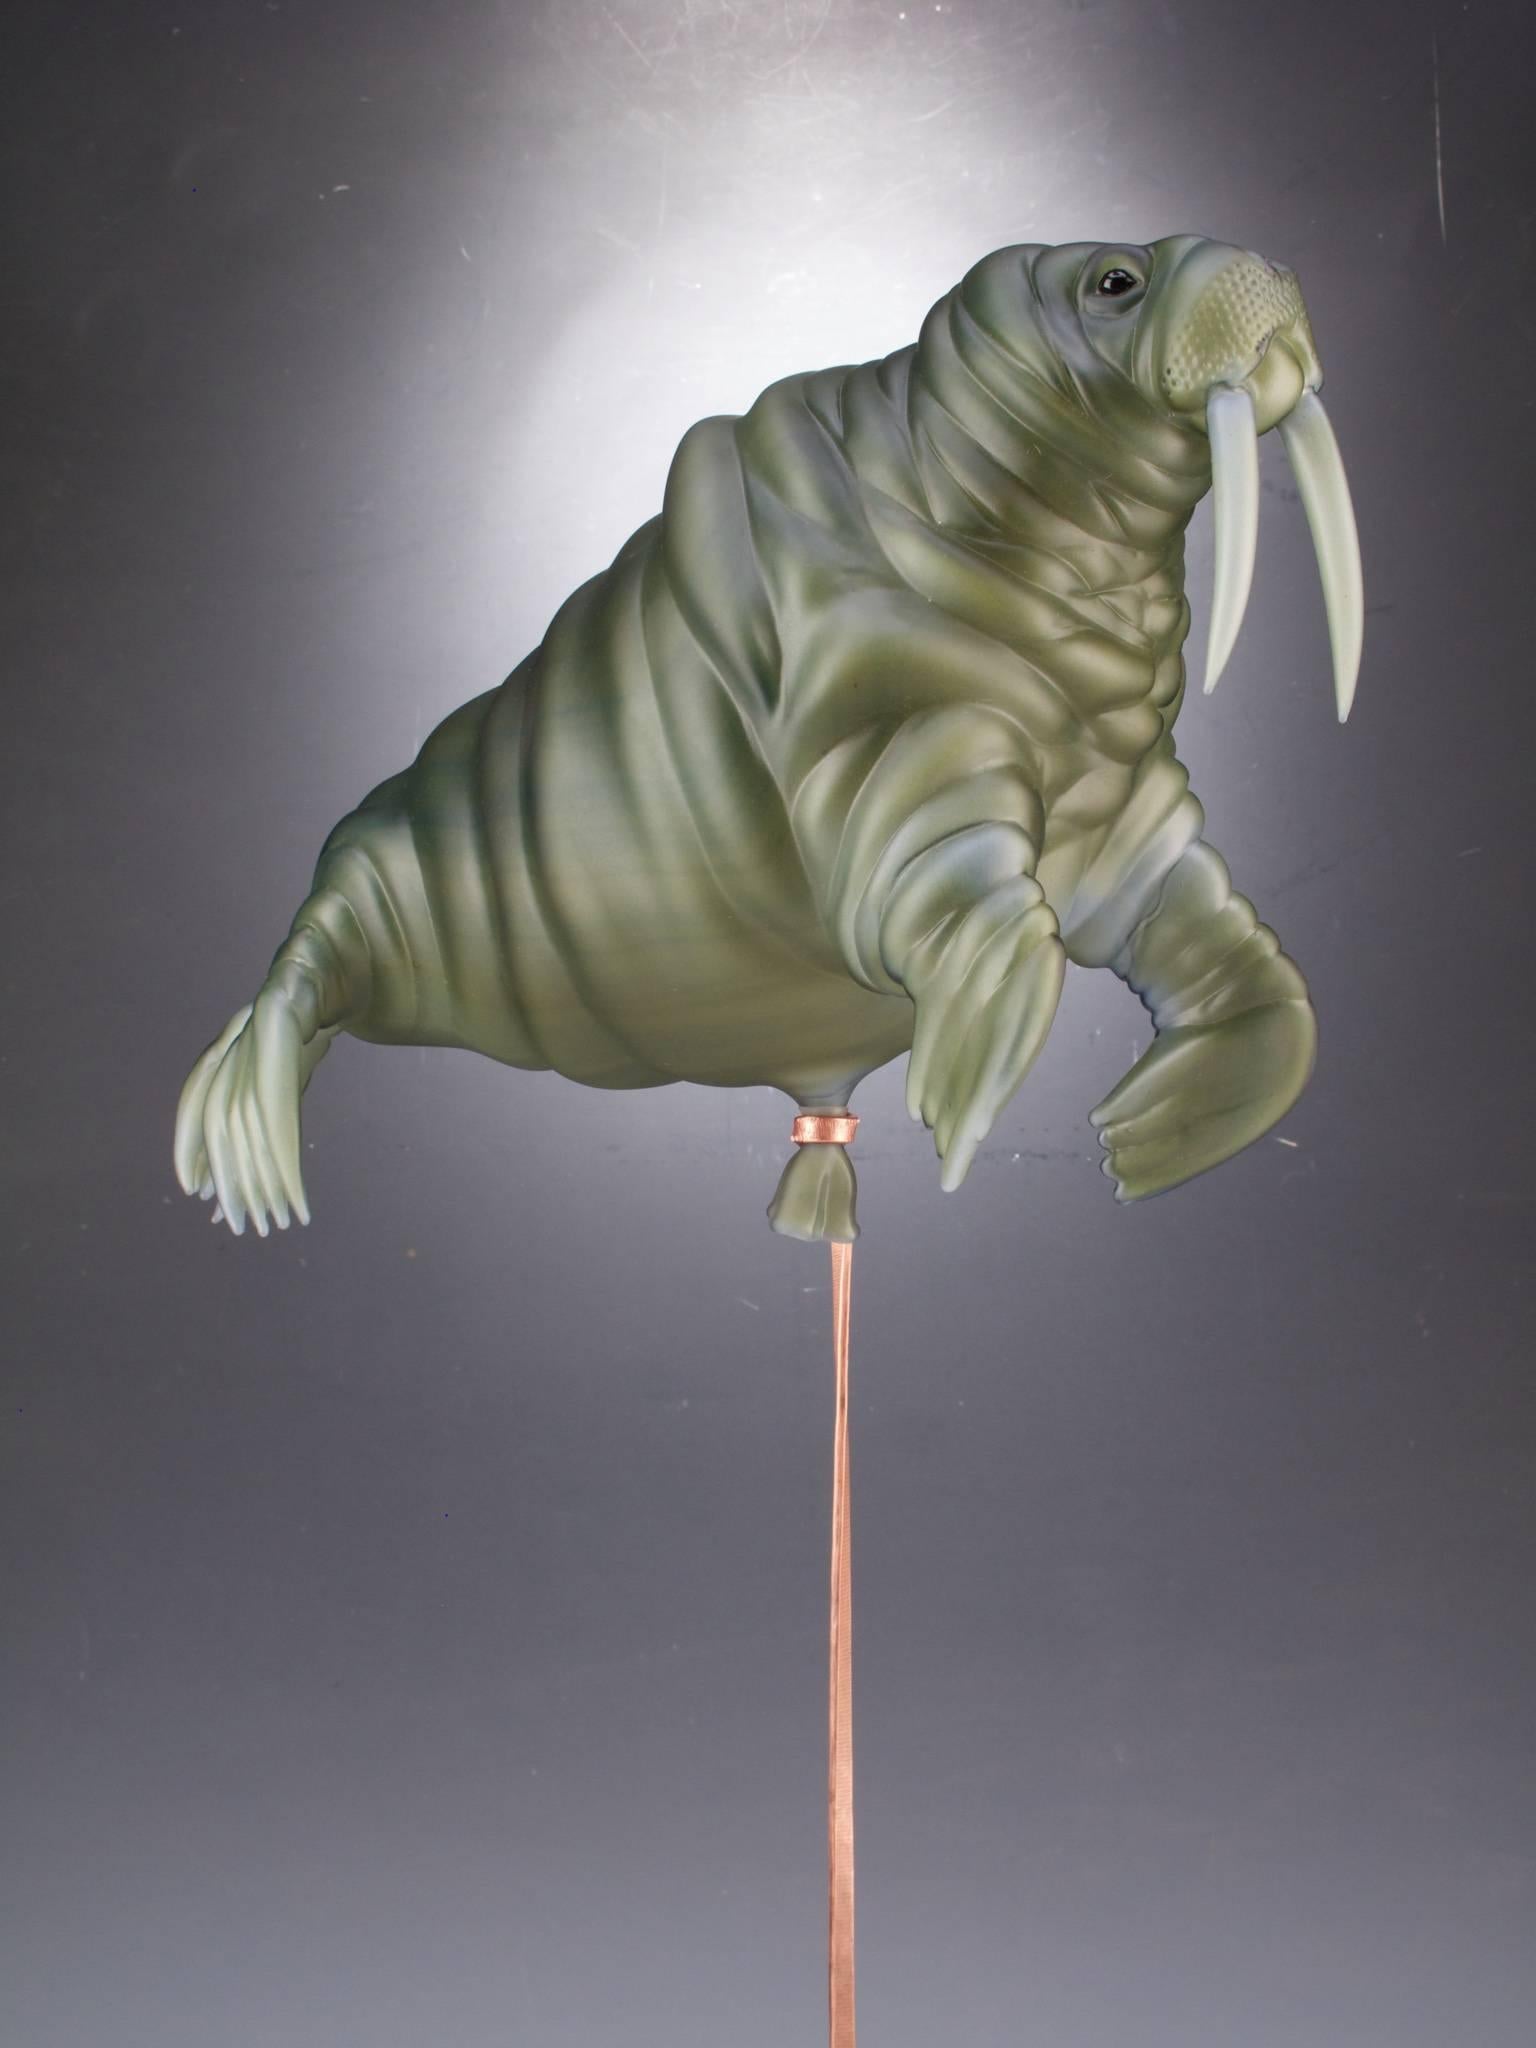 Green Walrus Balloon - Sculpture by Chris Ahalt